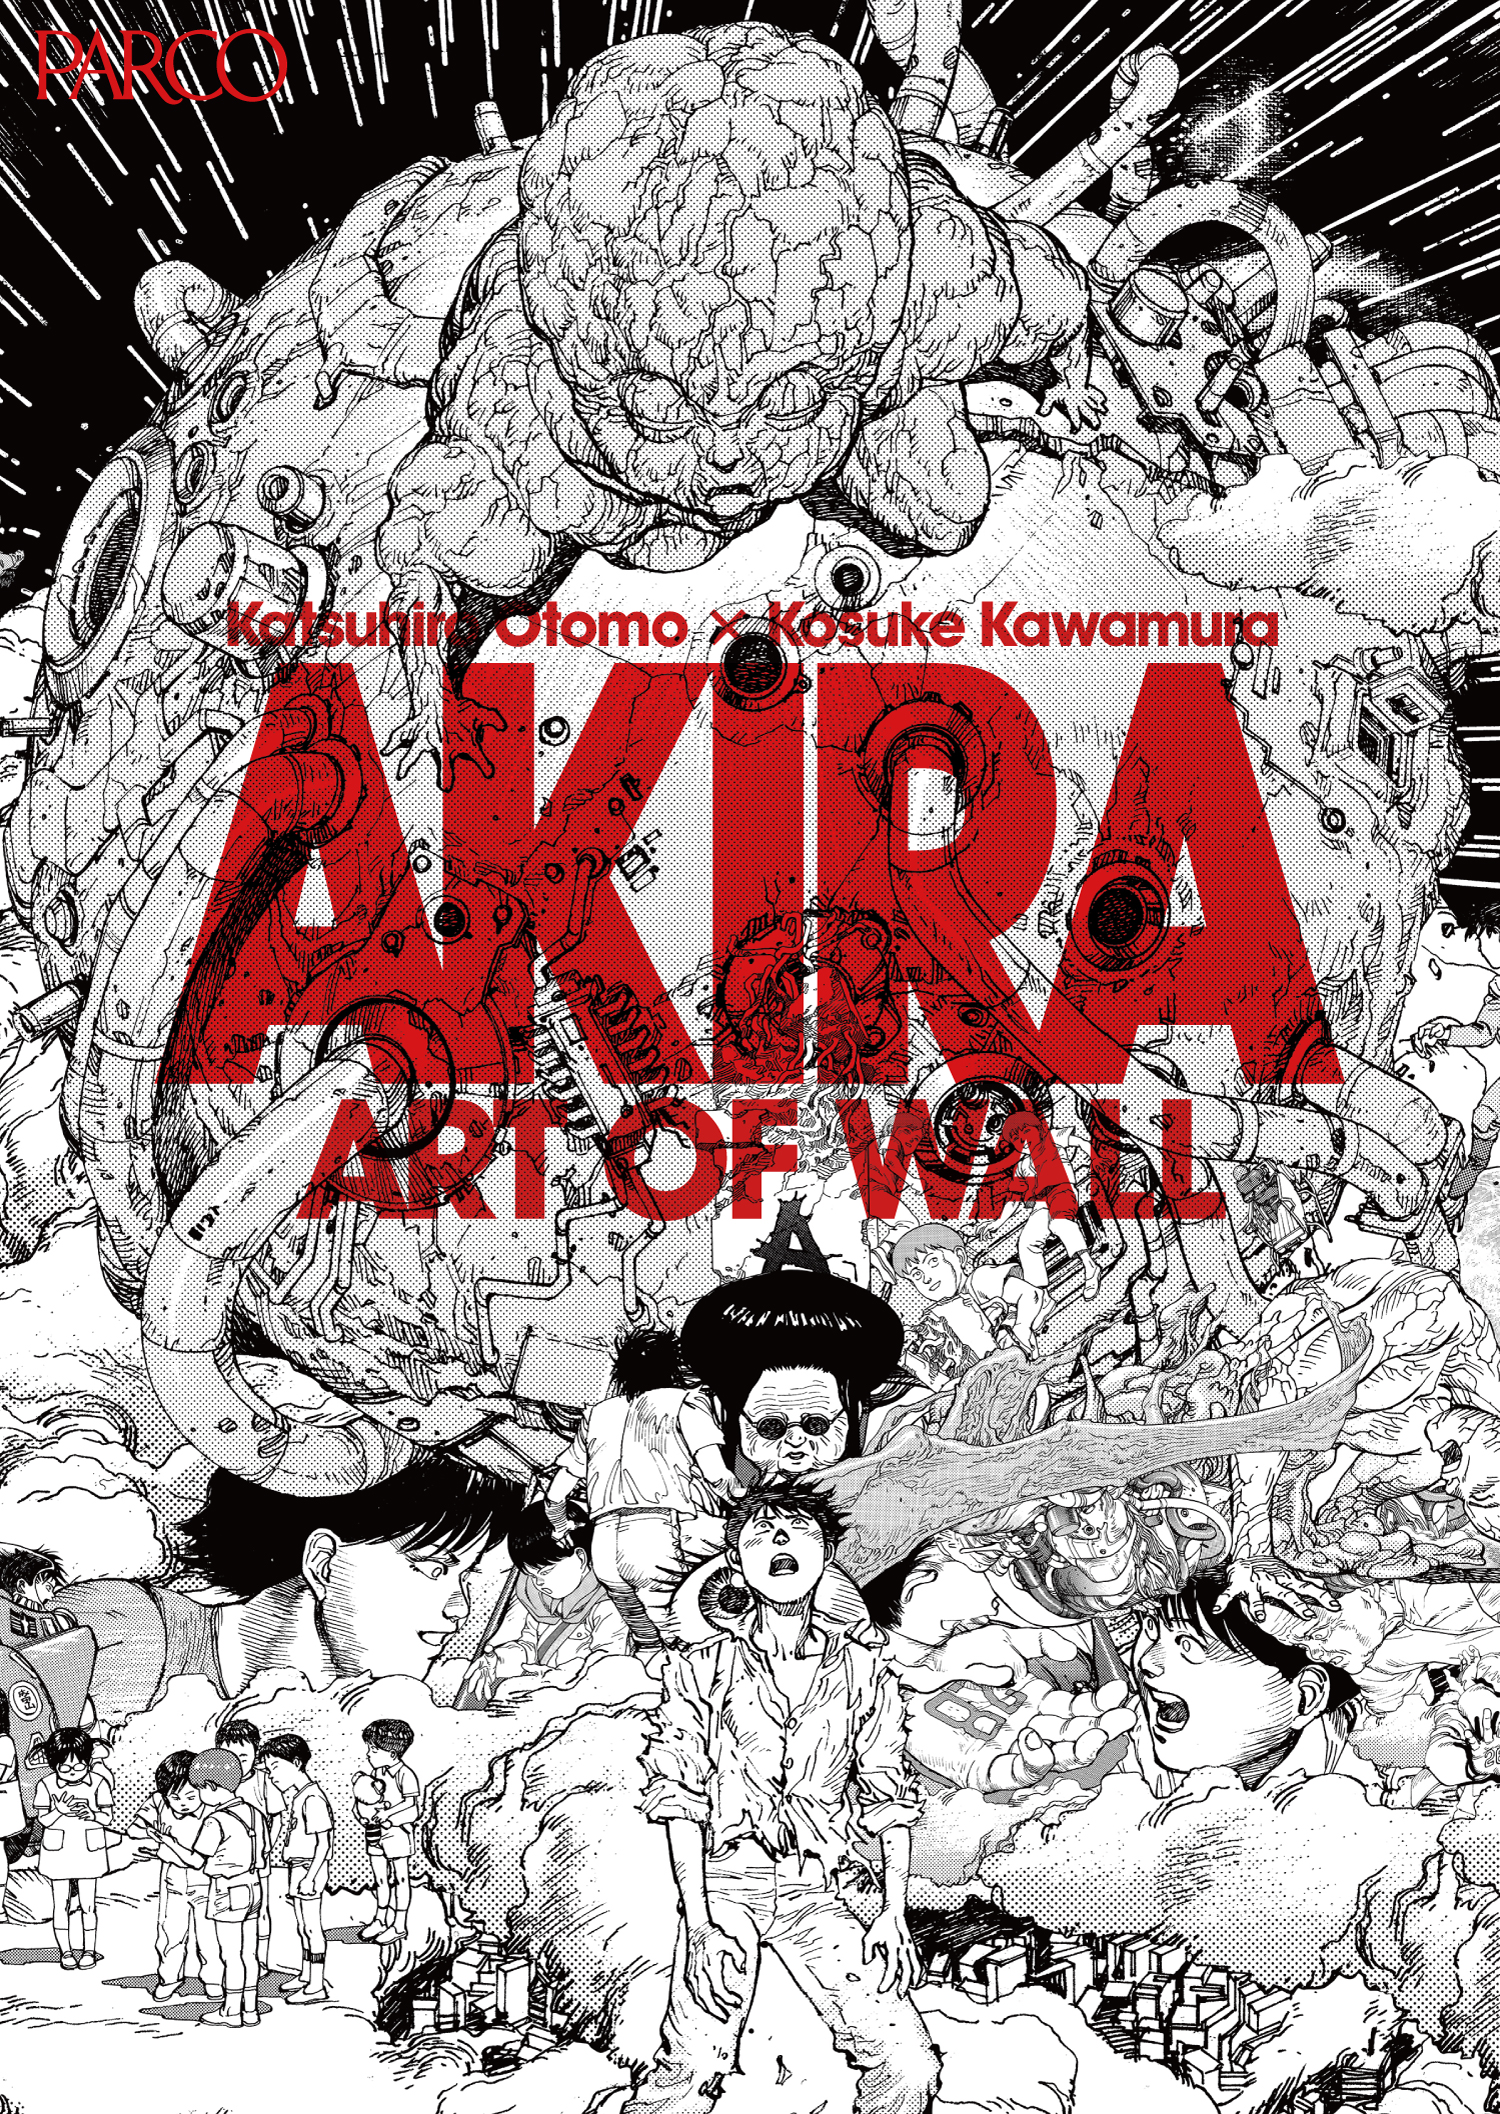 新生渋谷parcoのオープニングエキシビジョンが決定 Akira Art Of Wall Akira Art Exhibition を開催 株式会社パルコのプレスリリース